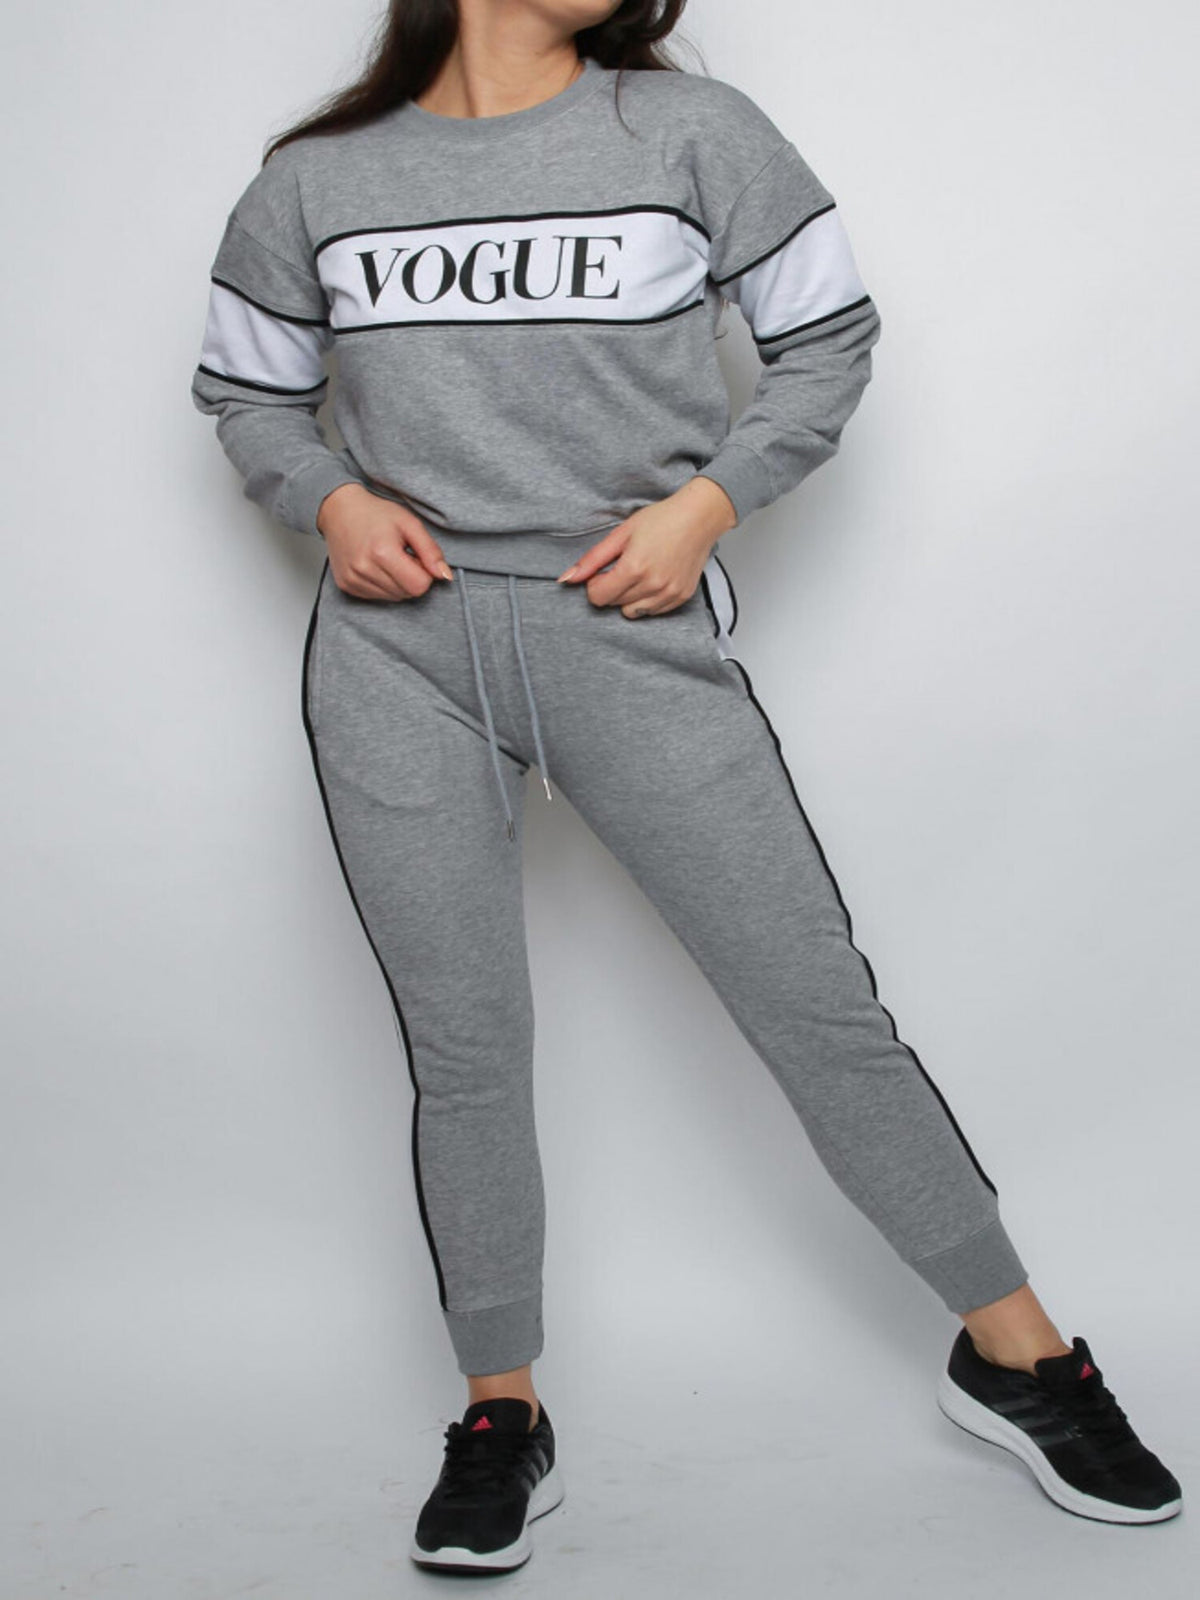 Vogue Sweatshirt in Grey - Lahori Athleisure (7169996488857)